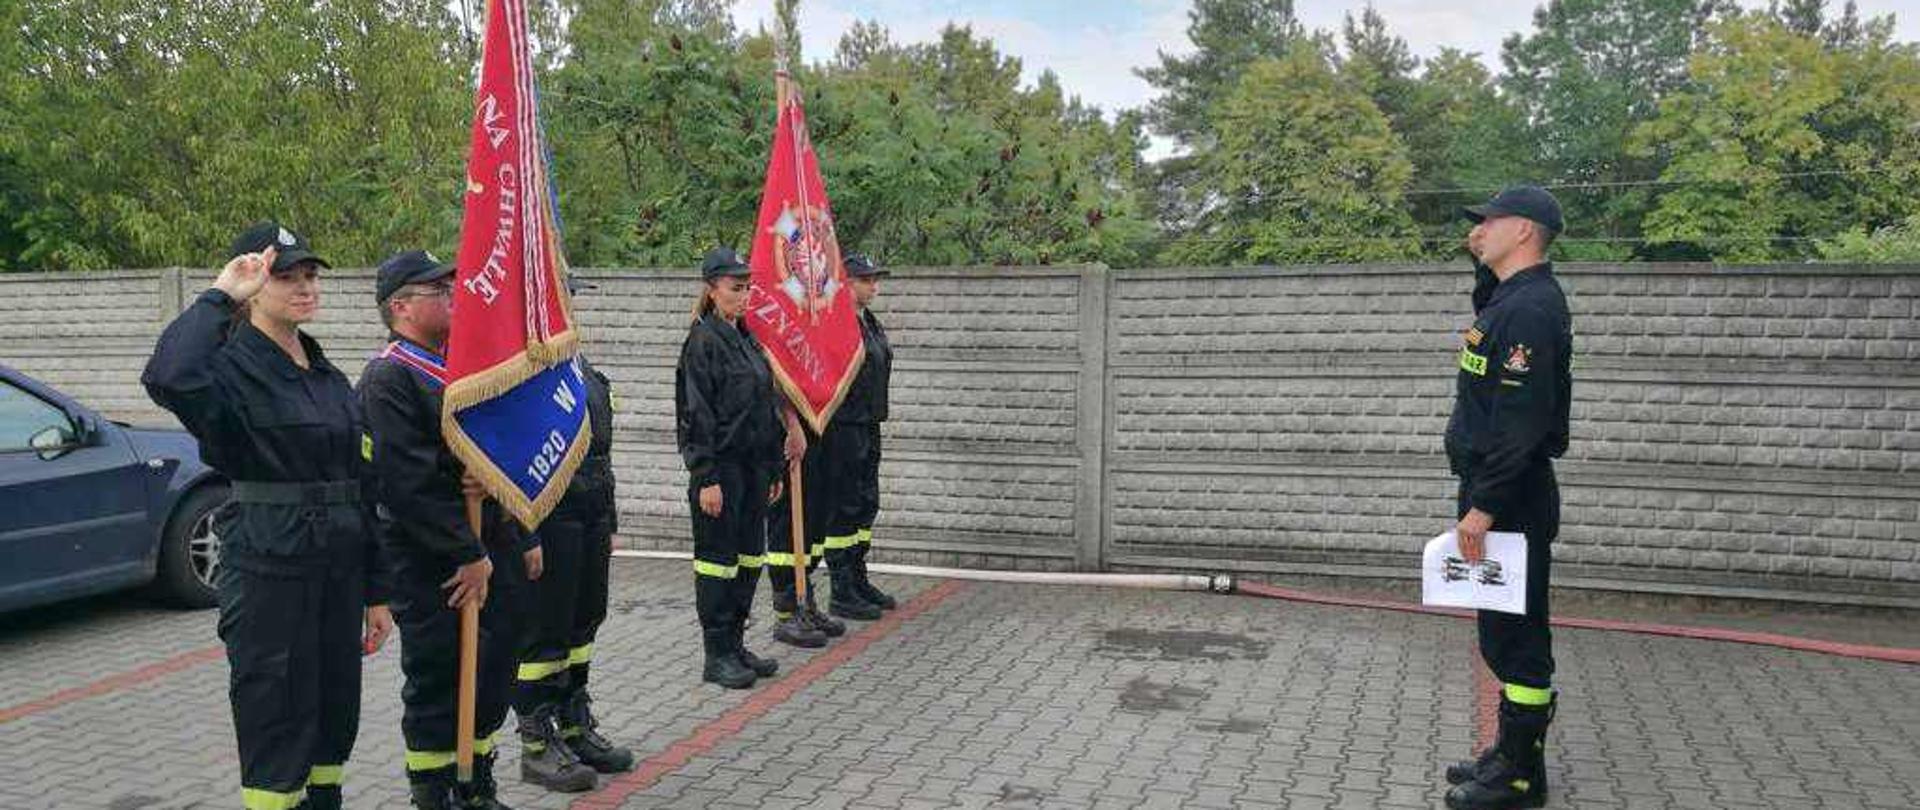 Szkolenie dla członków pocztów sztandarowych Jednostek Ochotniczych Straży Pożarnych z terenu powiatu obornickiego.